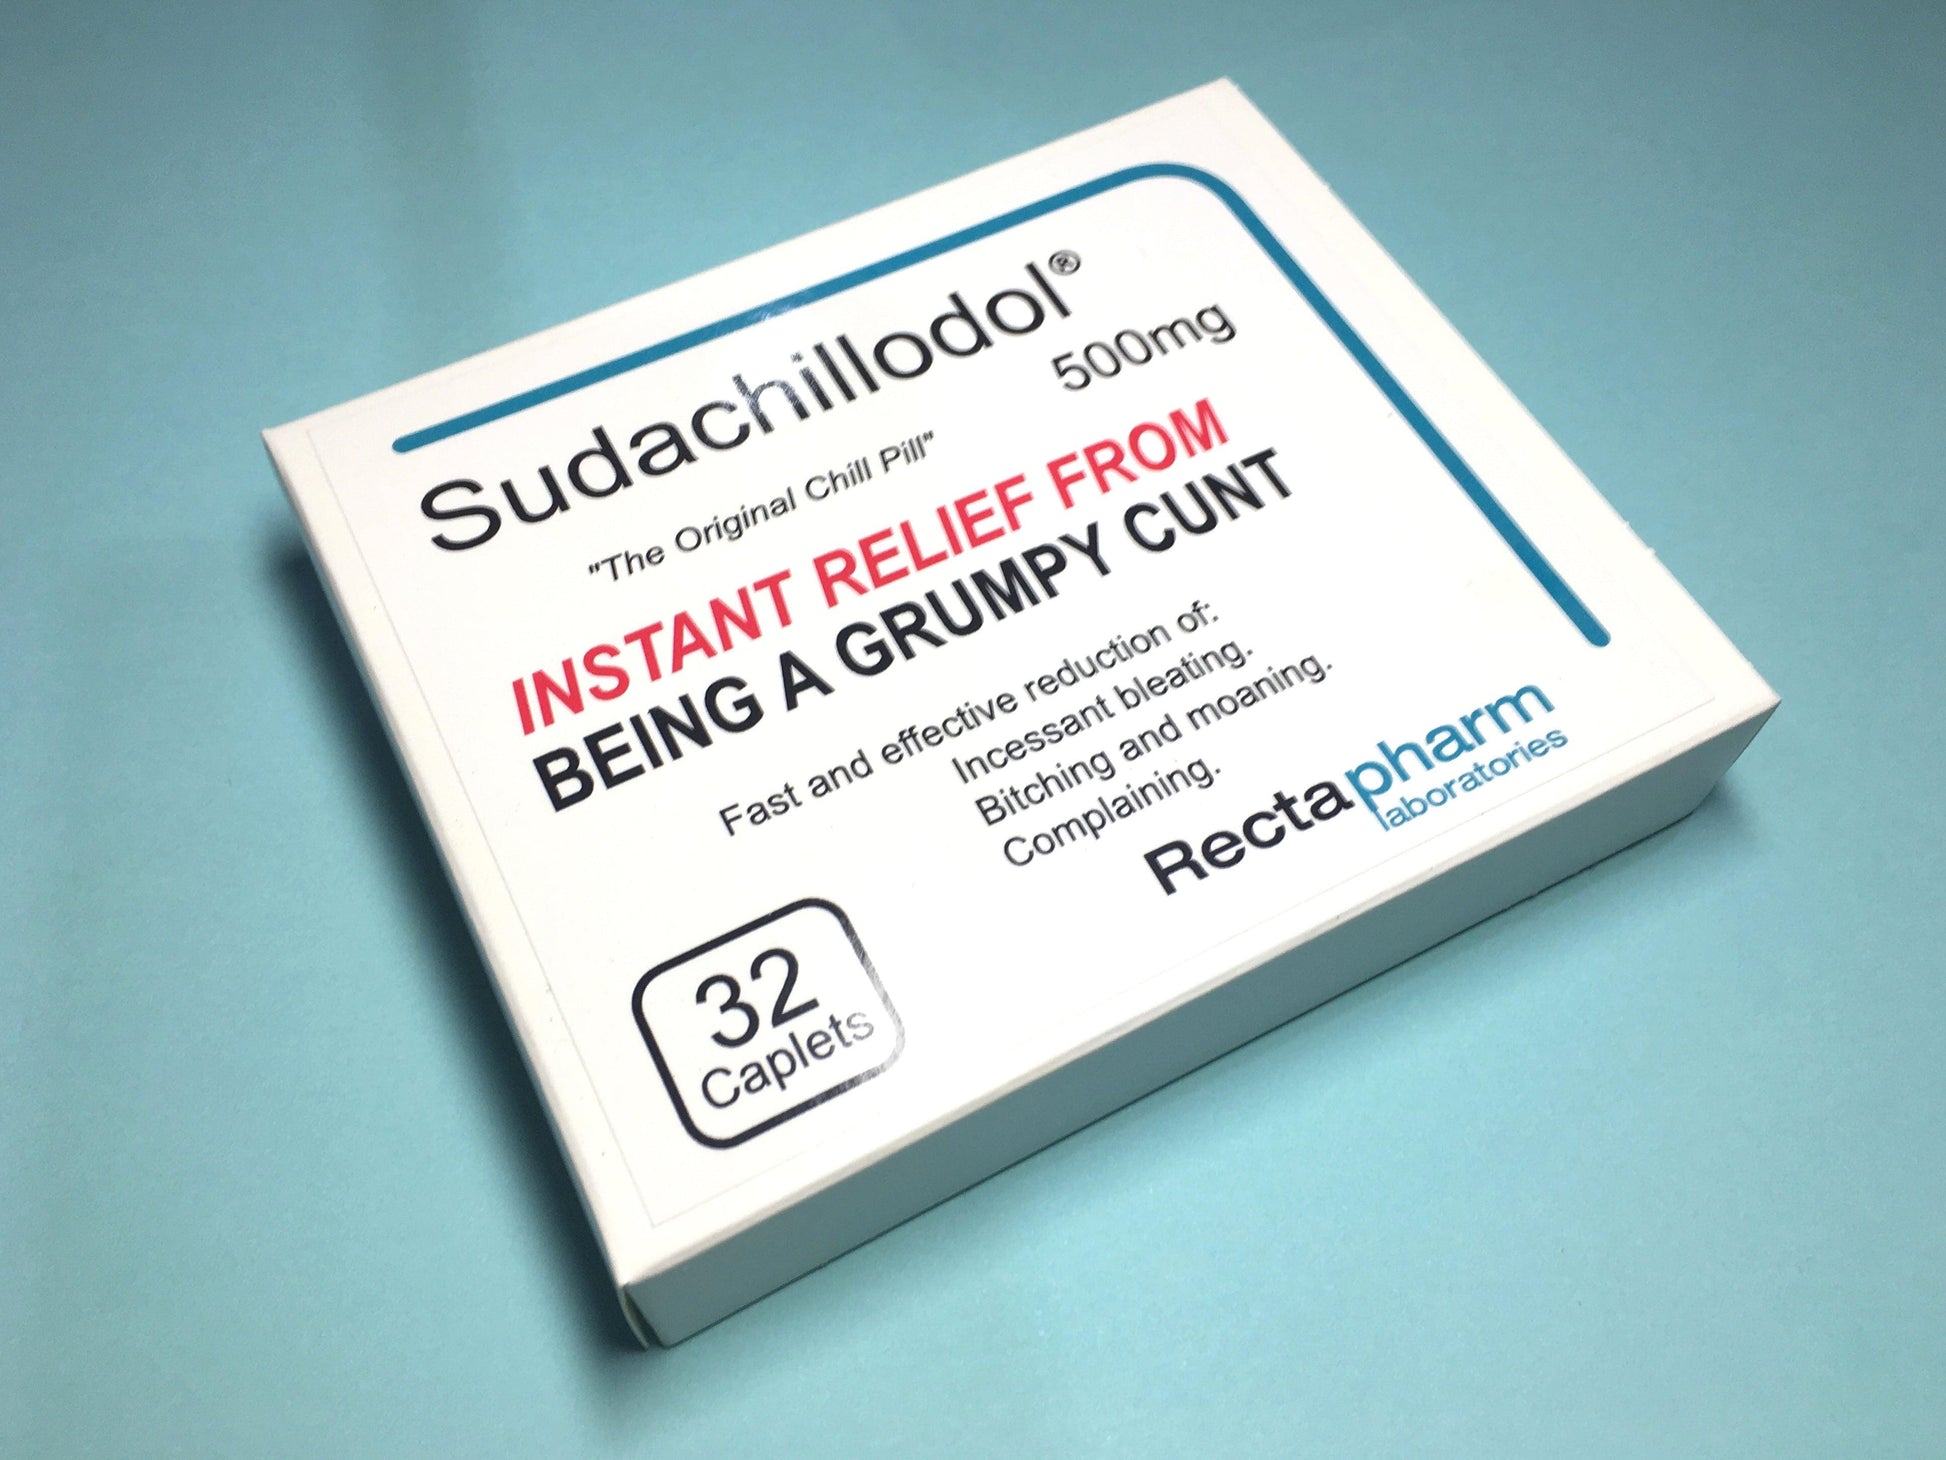 Pill Box - Sudachillodol - Mr. Inappropriate 